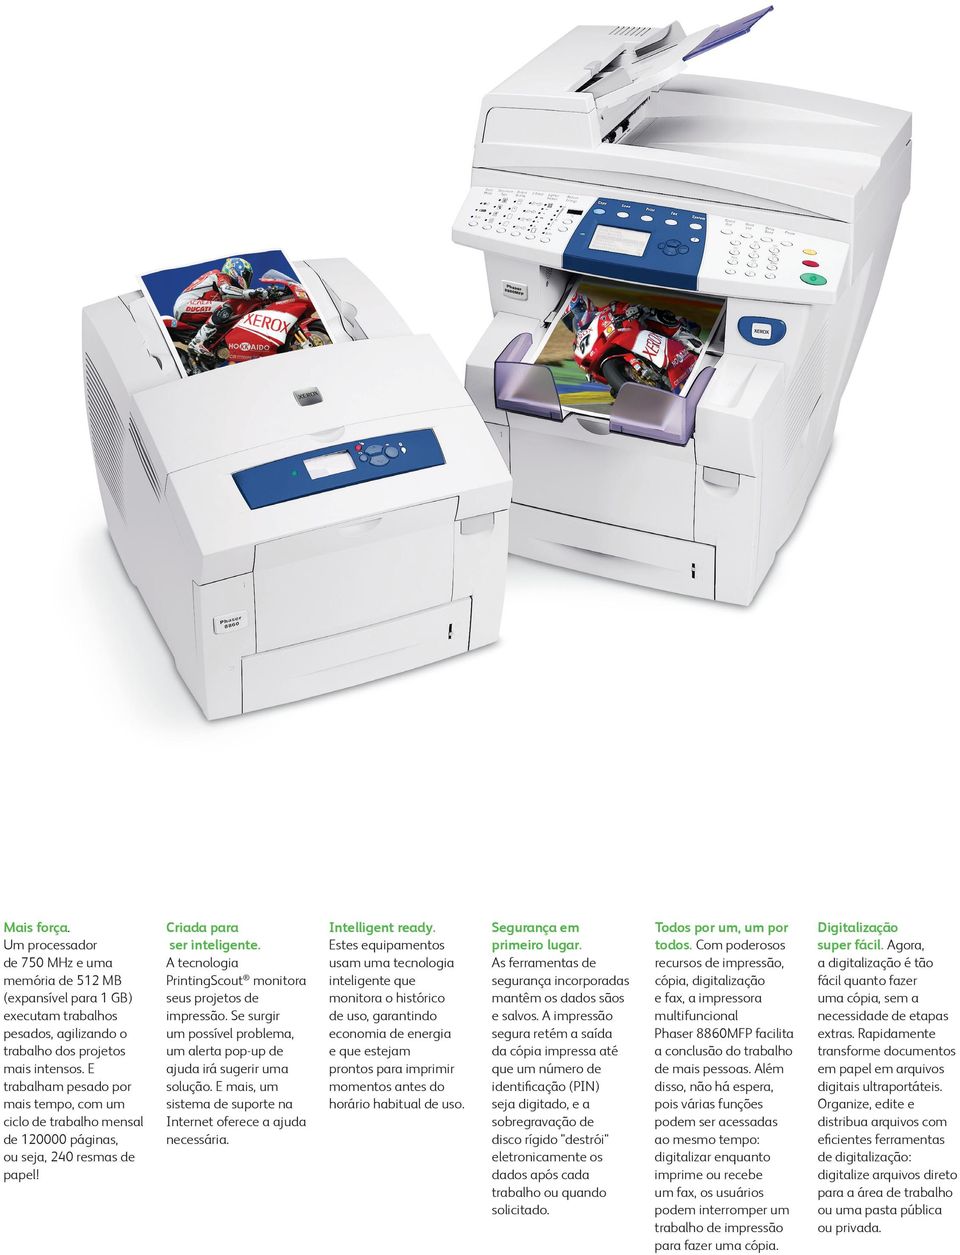 A tecnologia PrintingScout monitora seus projetos de impressão. Se surgir um possível problema, um alerta pop-up de ajuda irá sugerir uma solução.